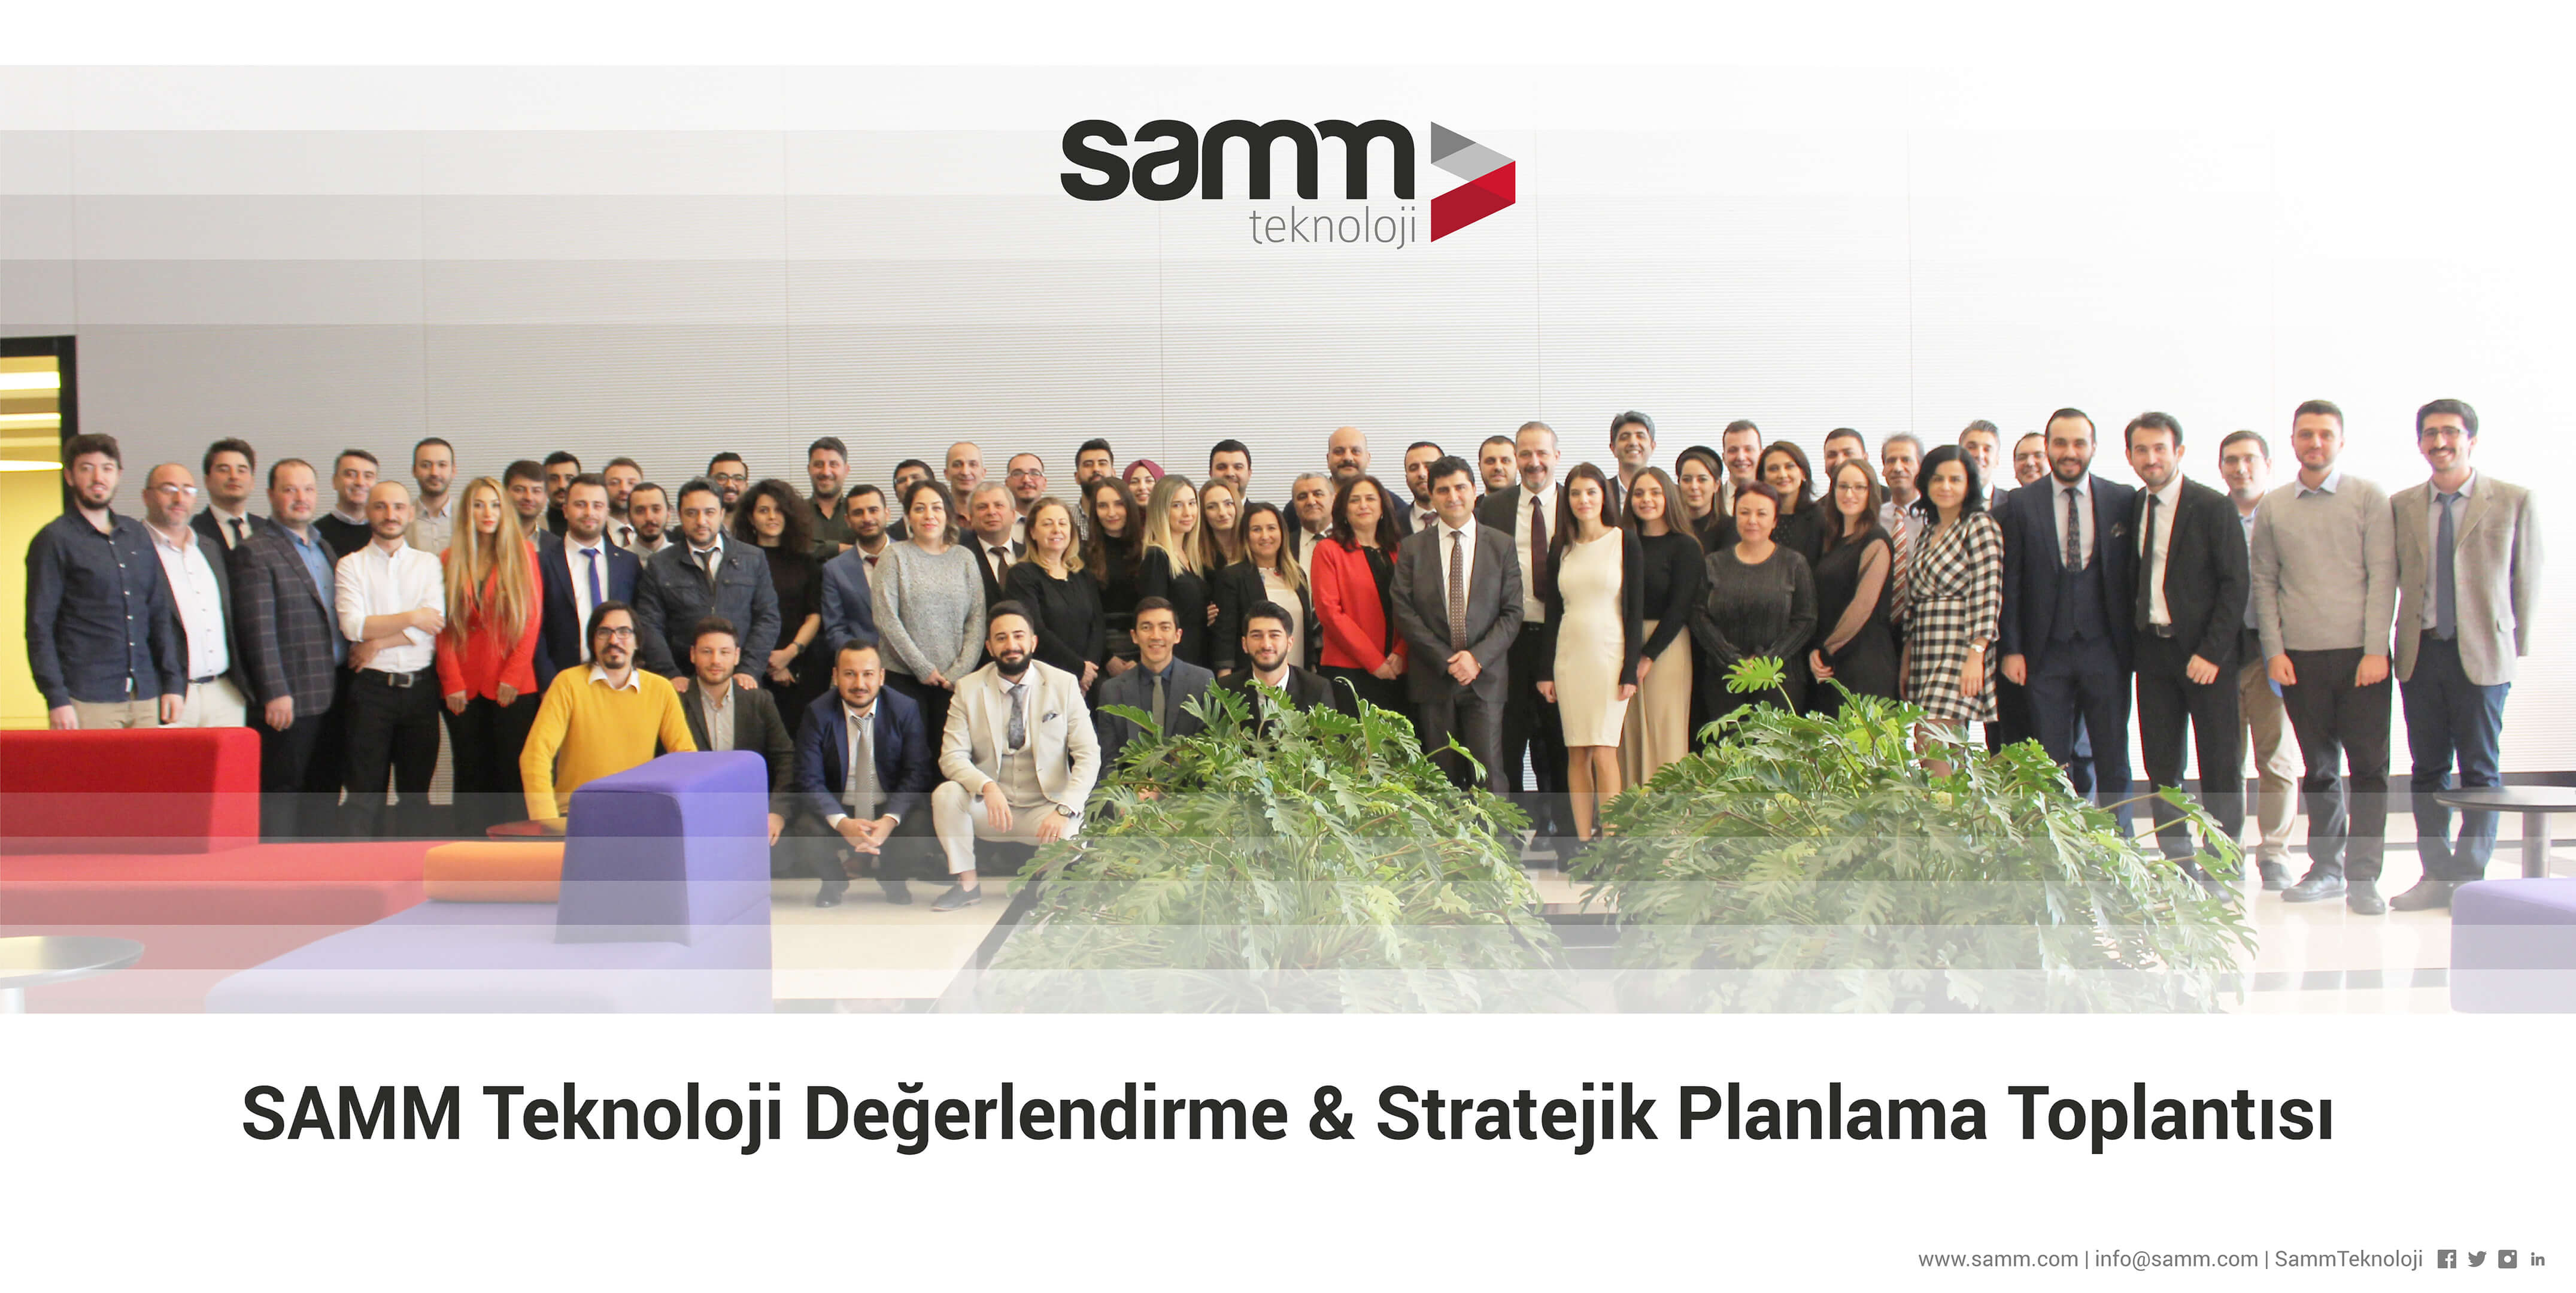 SAMM Teknoloji Değerlendirme & Stratejik Planlama Toplantısı